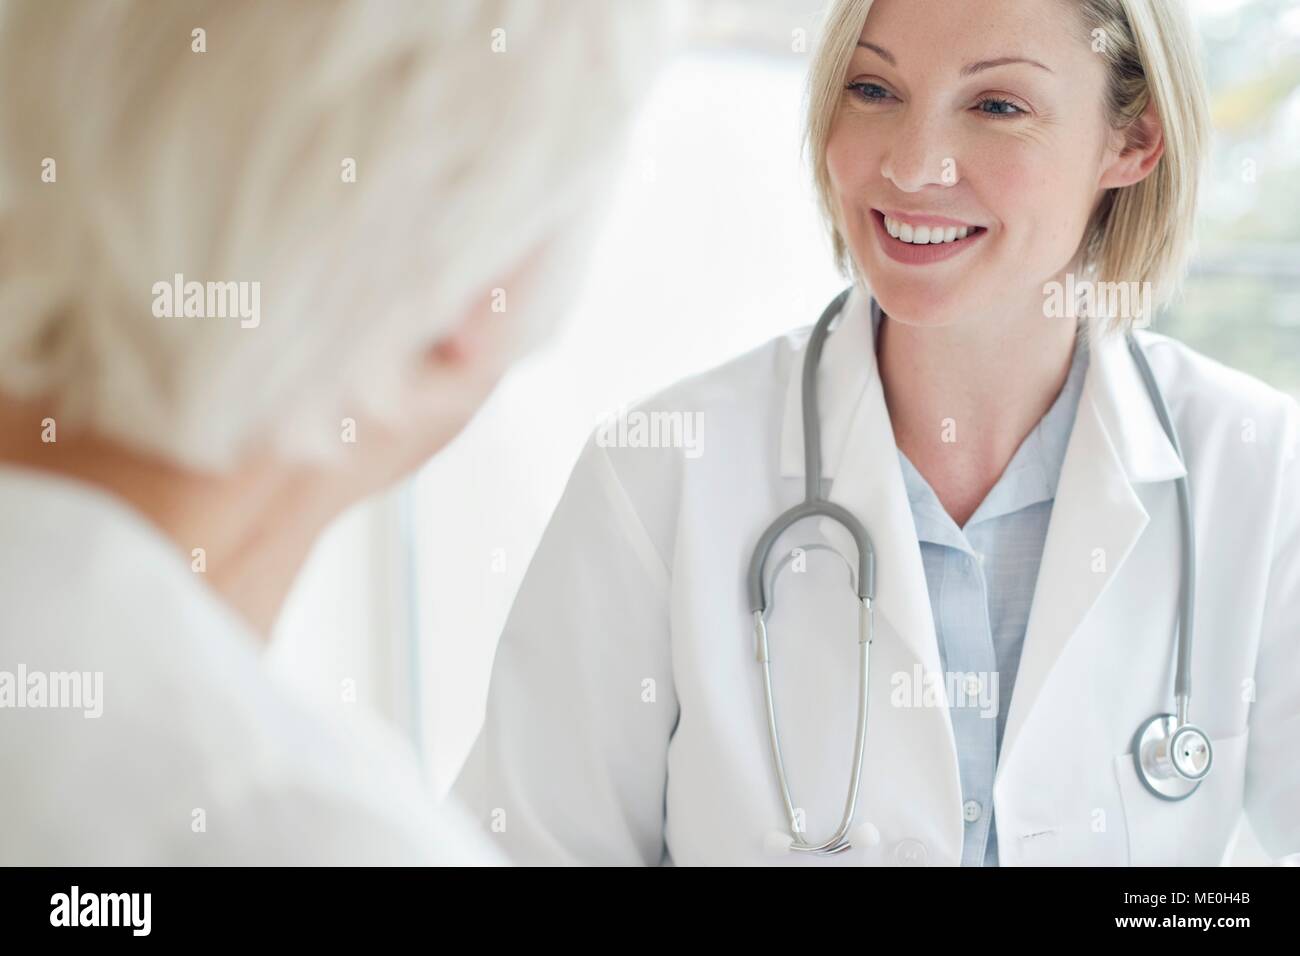 Doctora sonriendo hacia el paciente. Foto de stock